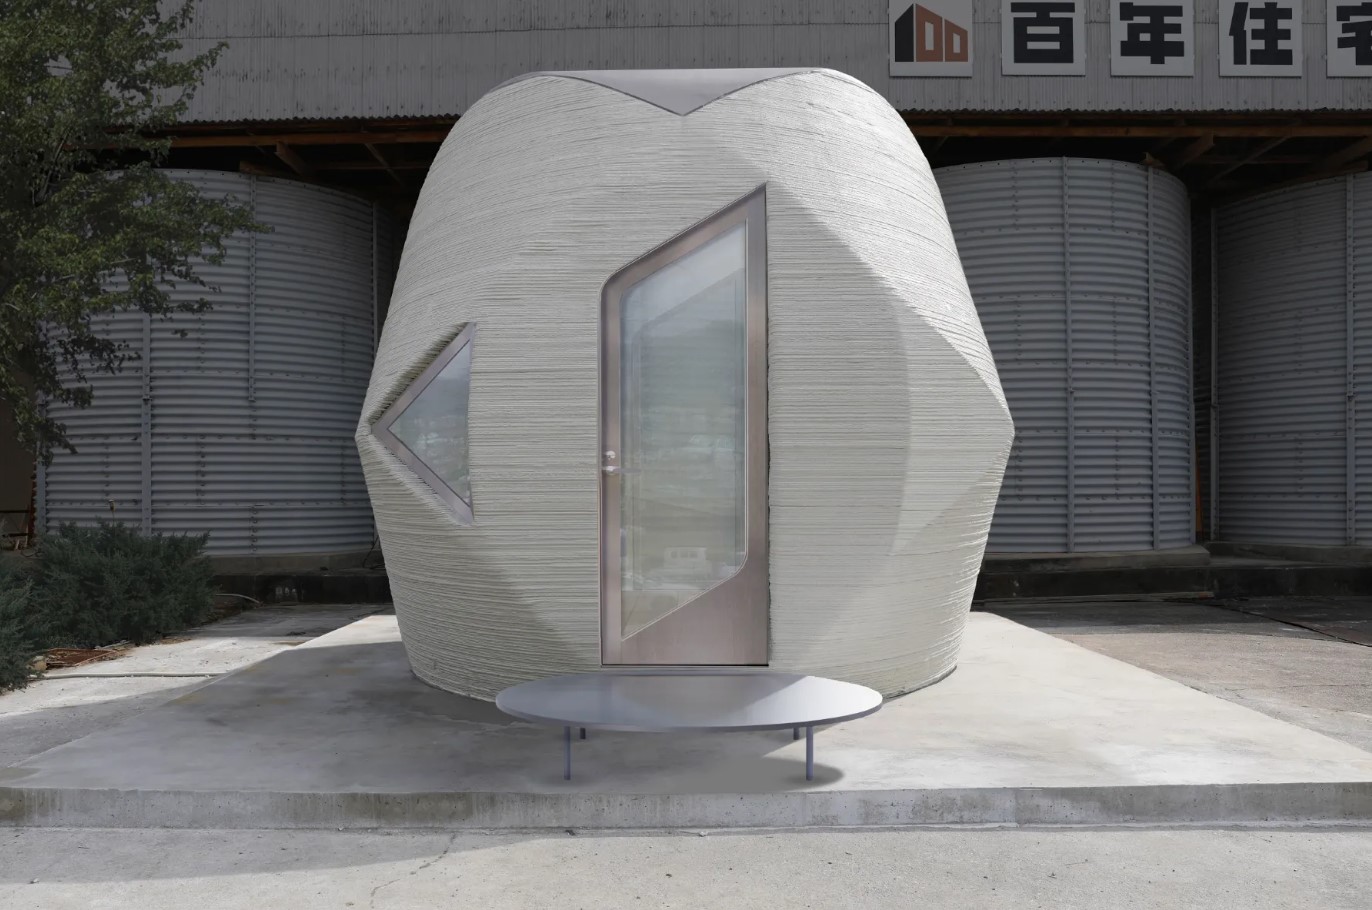 Budynek Sphere wydrukowany w 3D (źródło: Serendix)